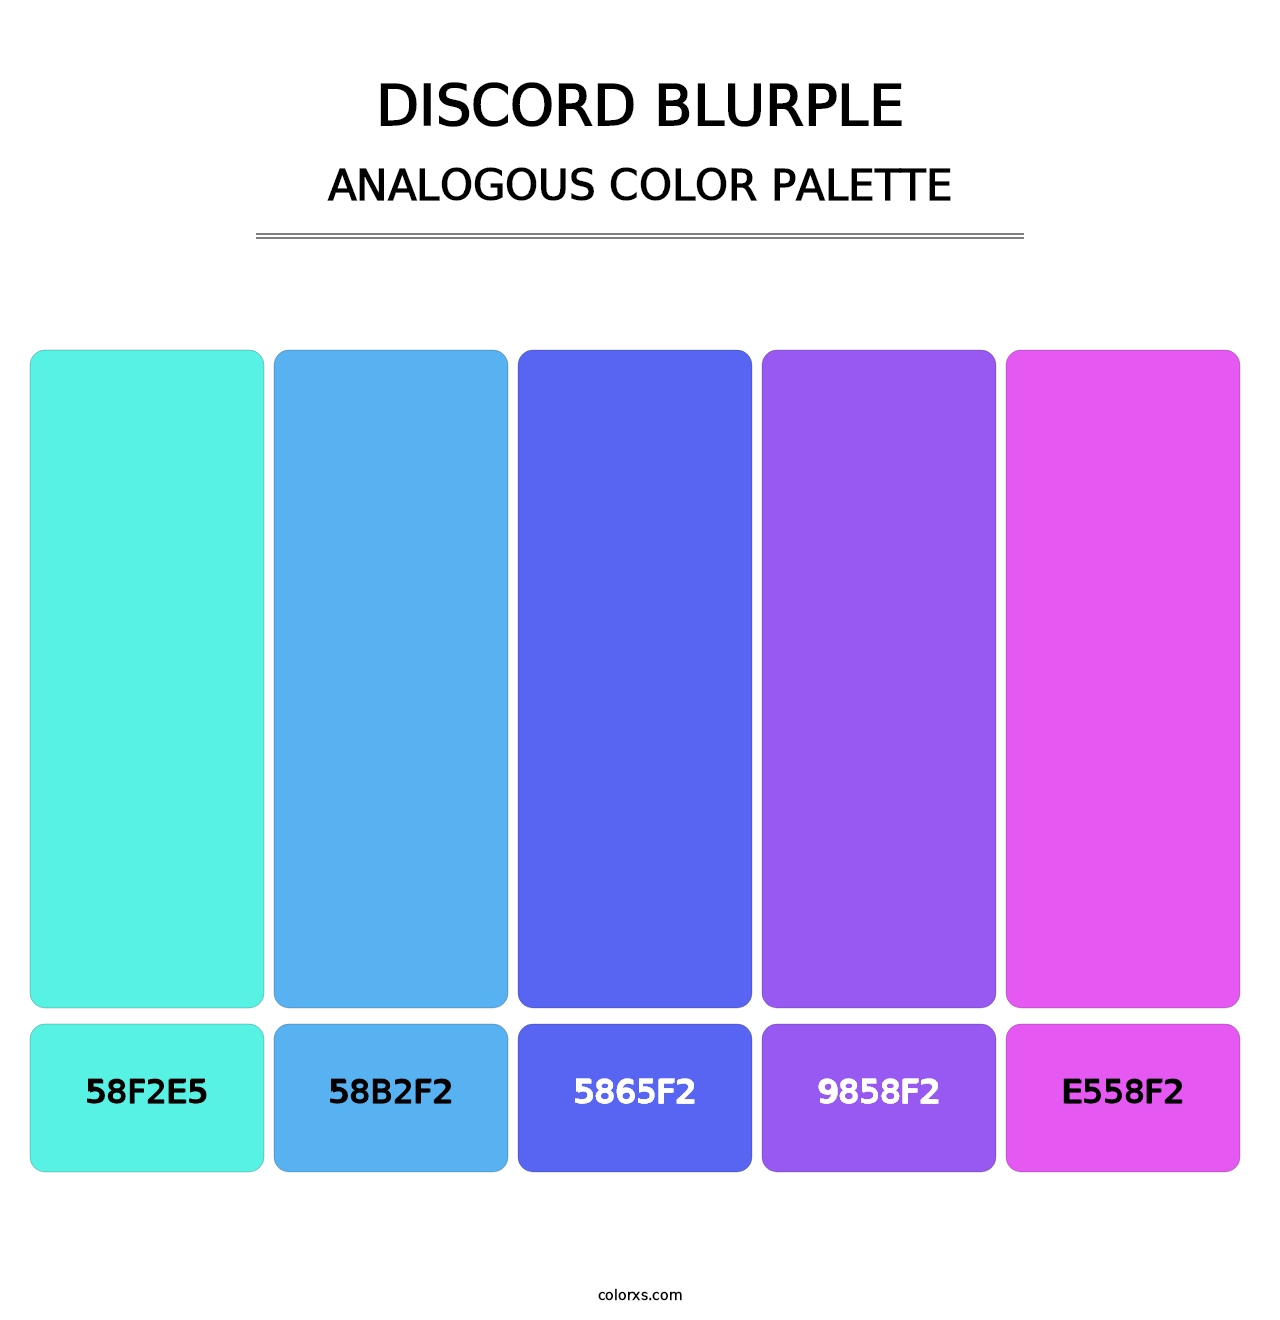 Discord Blurple - Analogous Color Palette